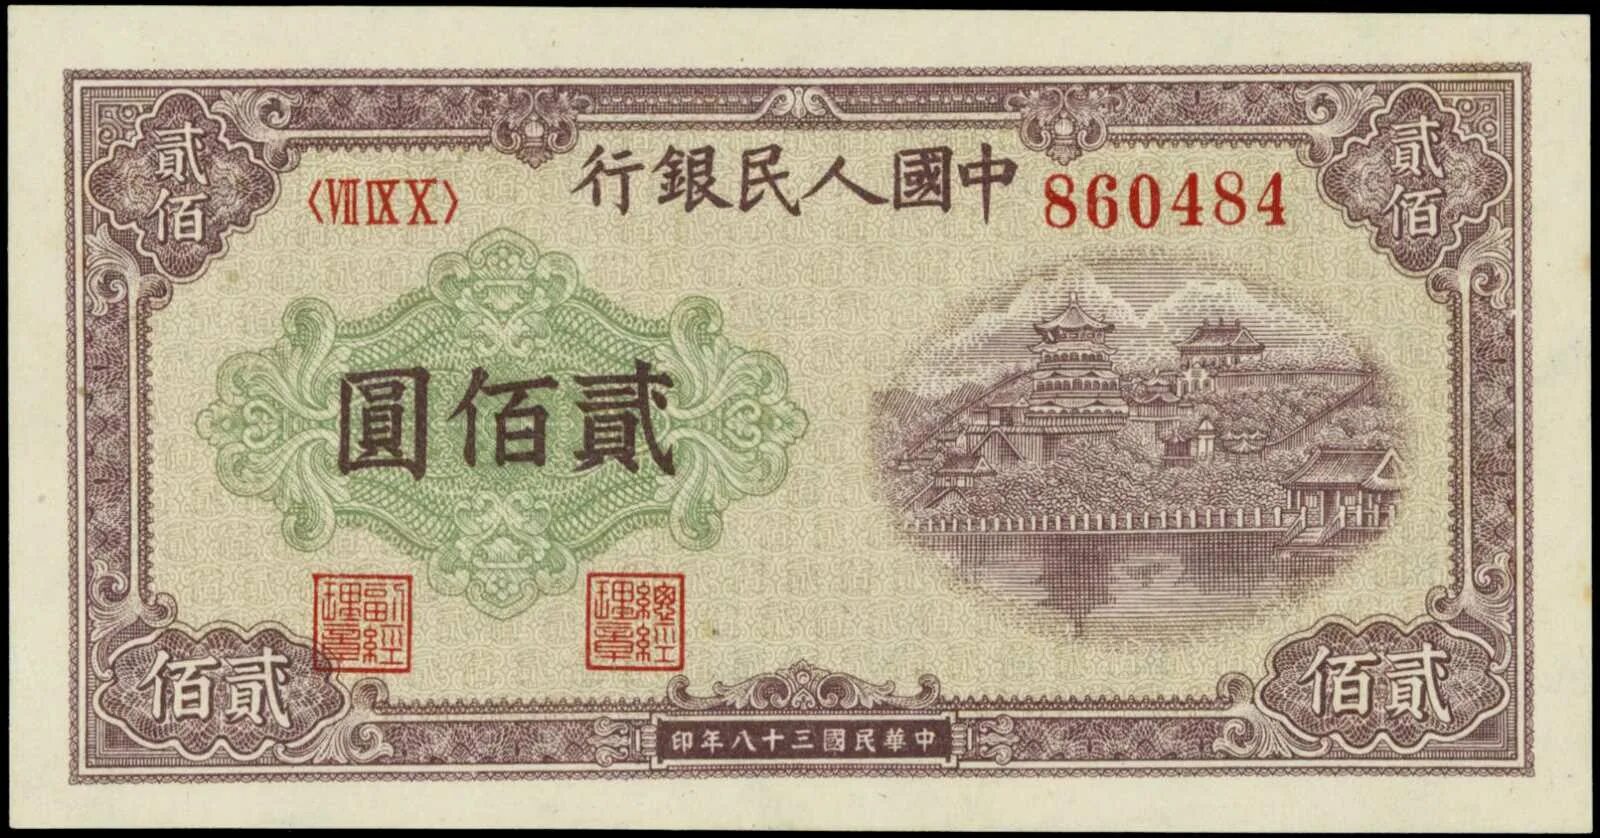 200 тысяч юаней. 1949 Юаней. Бона Китай 1949. 200 Yuan 1949 p-837. 200 Юаней 1949.